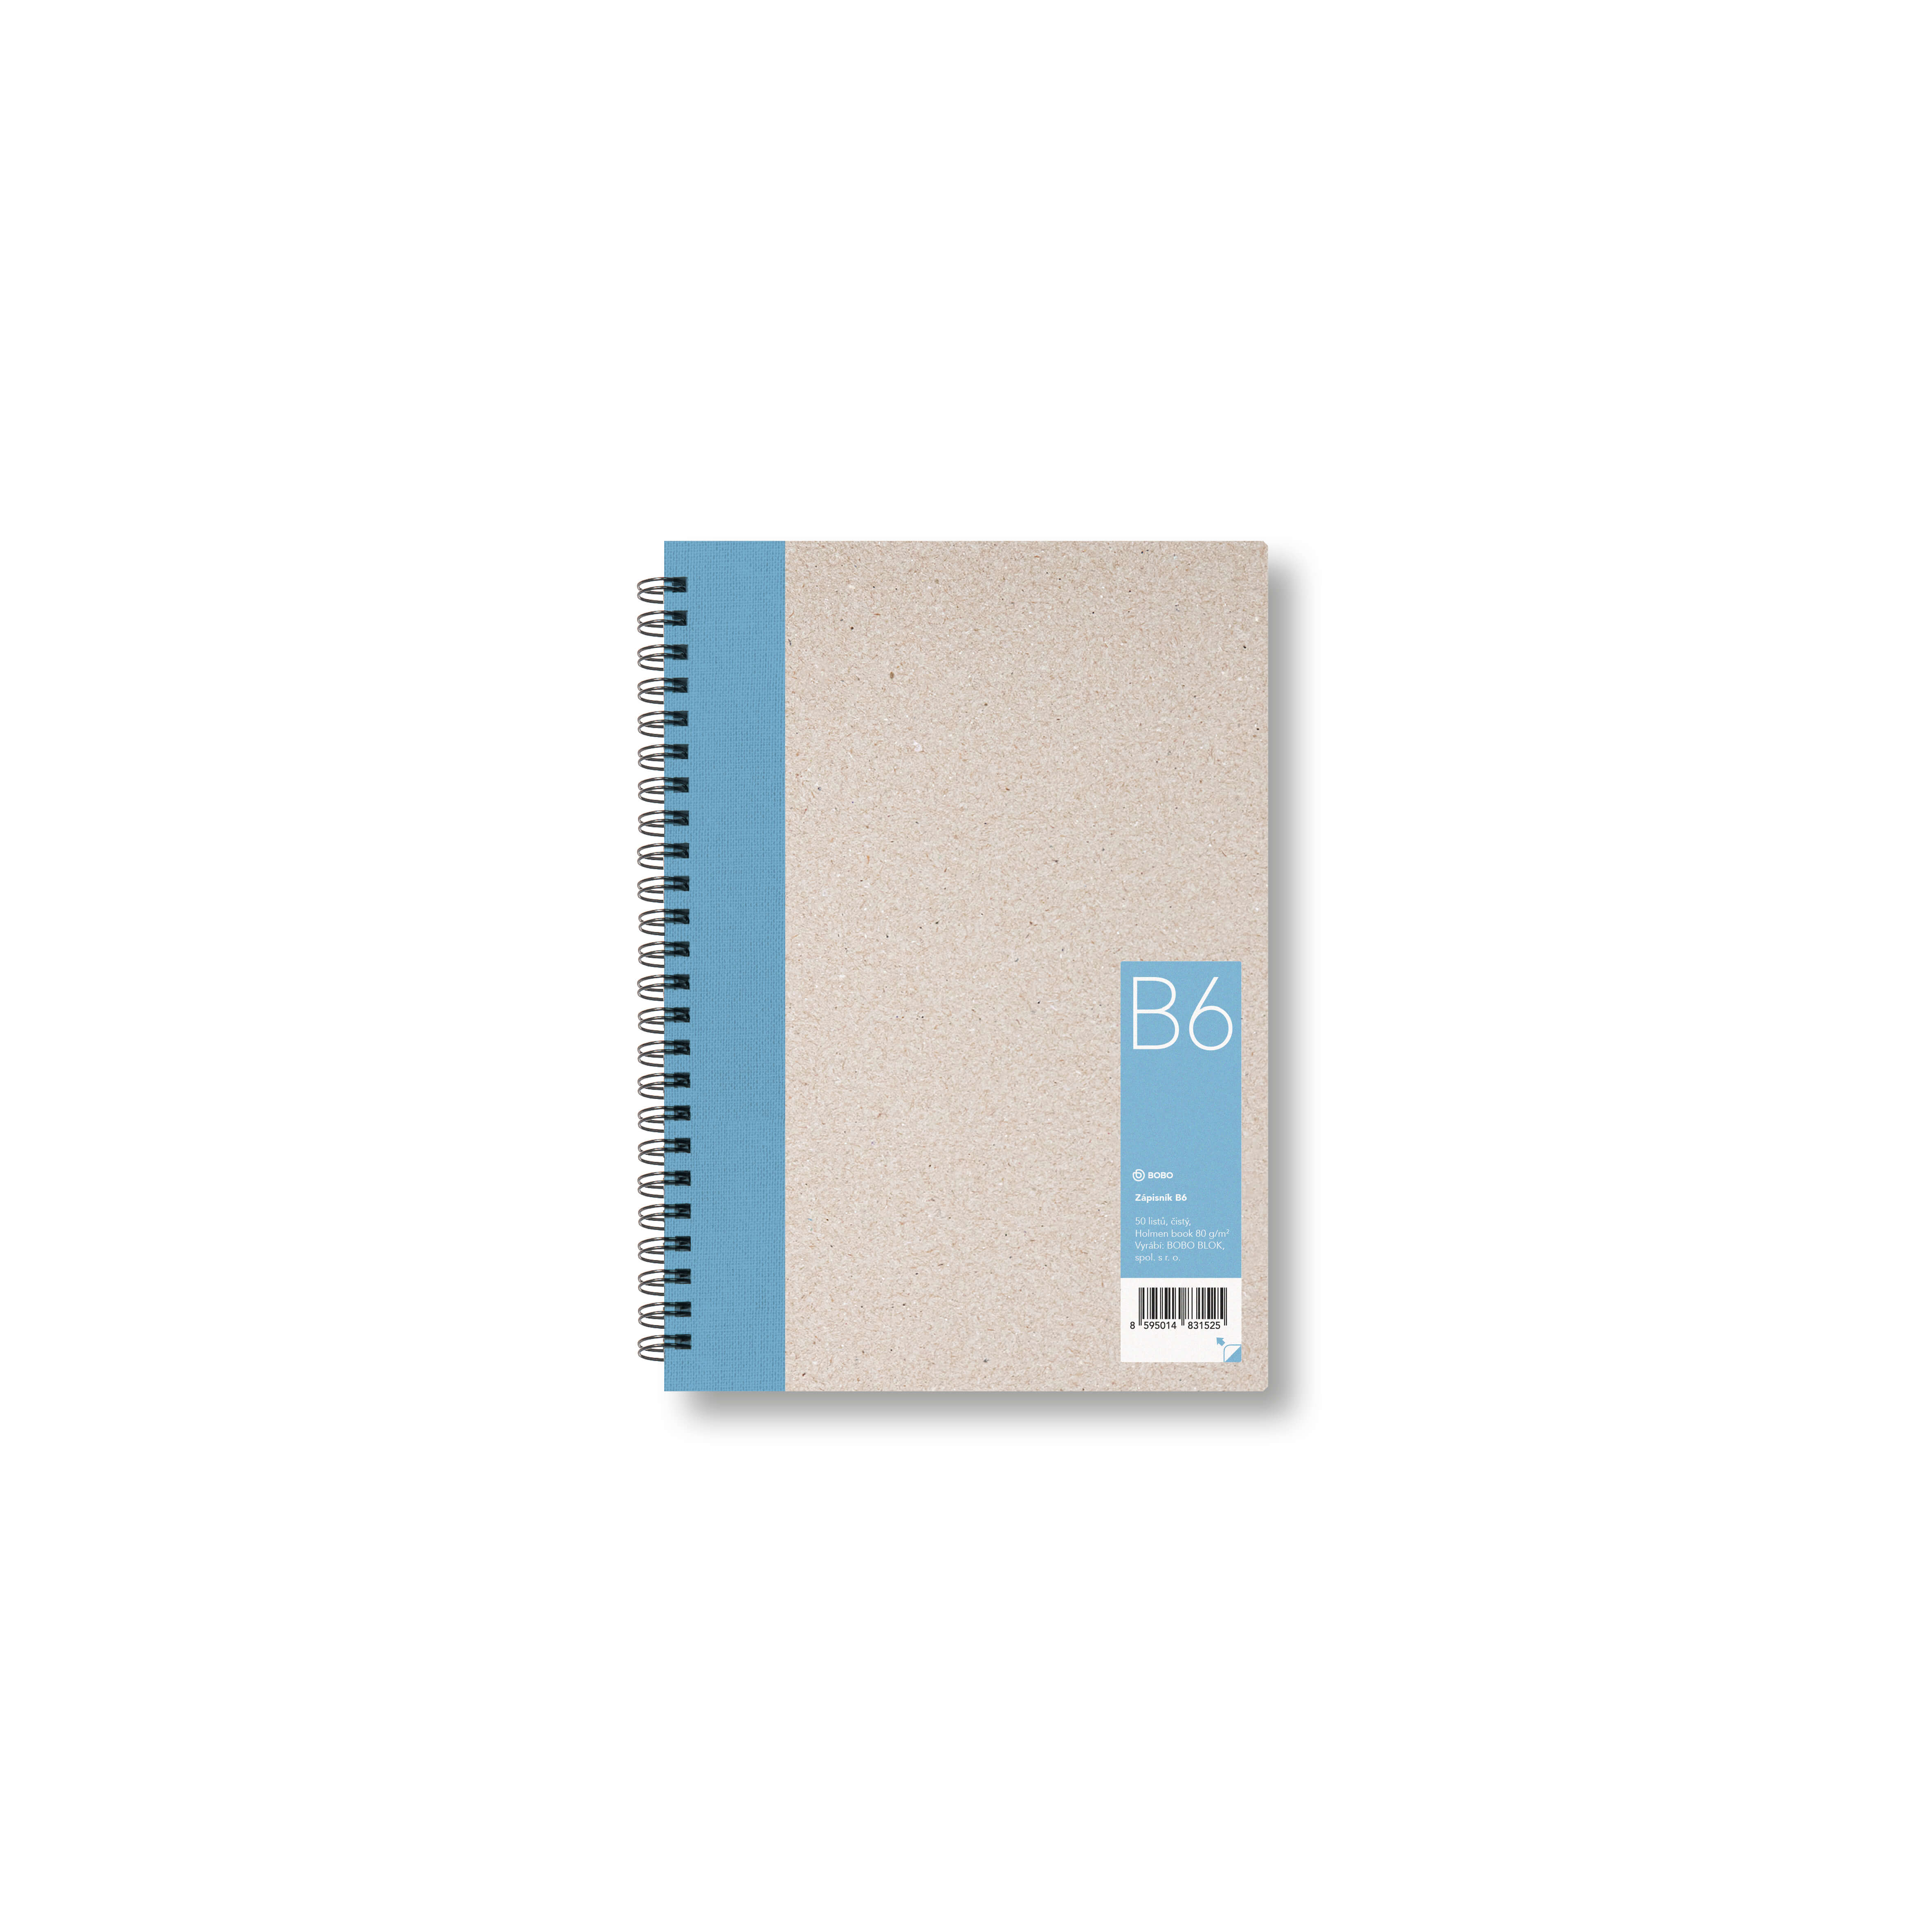 Zápisník Bobo B6, čistý, světle modrý